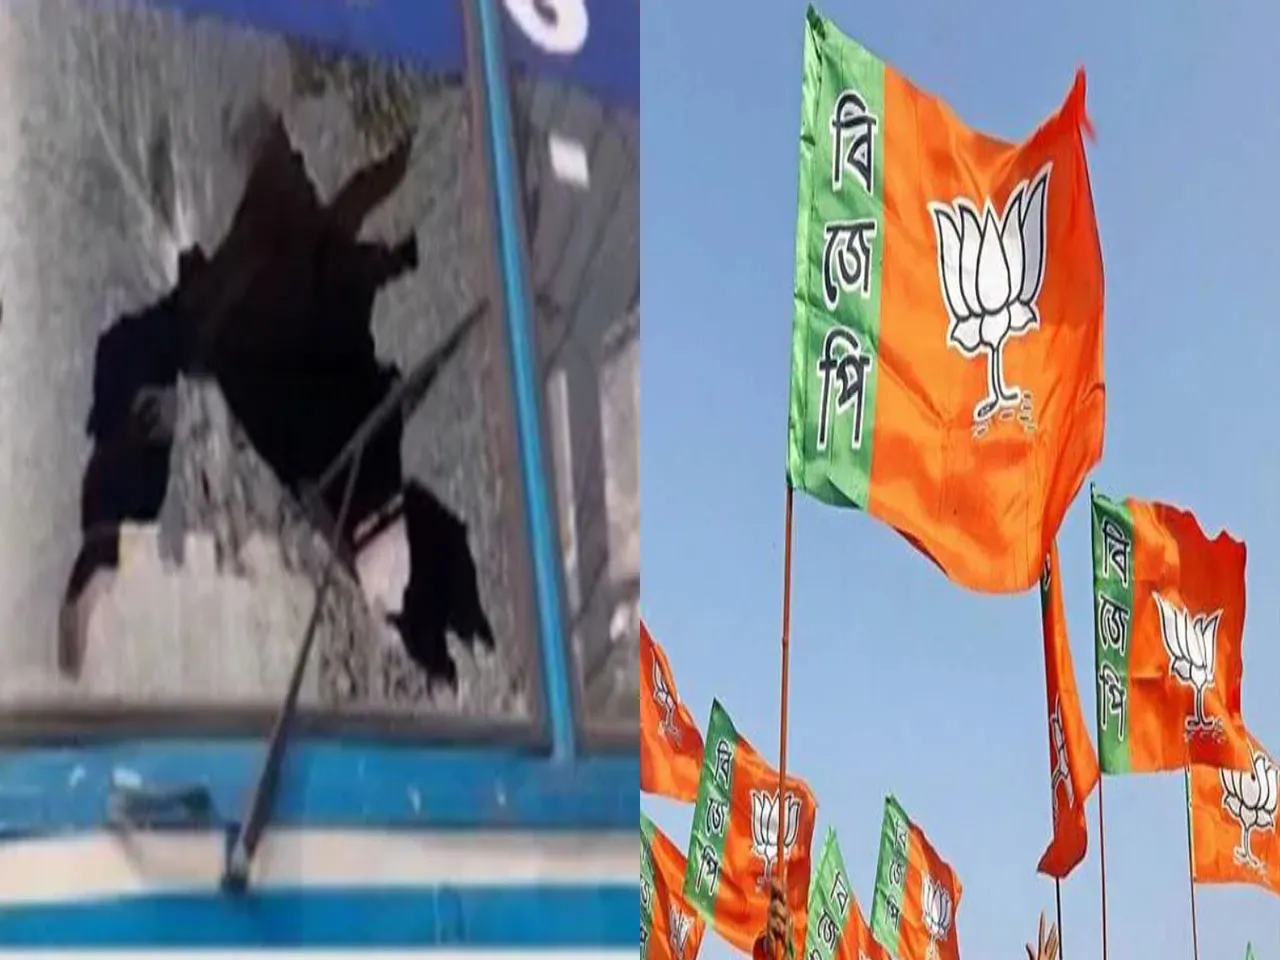 BJP Bandh: Bus vandalised in Coochbehar, One injured